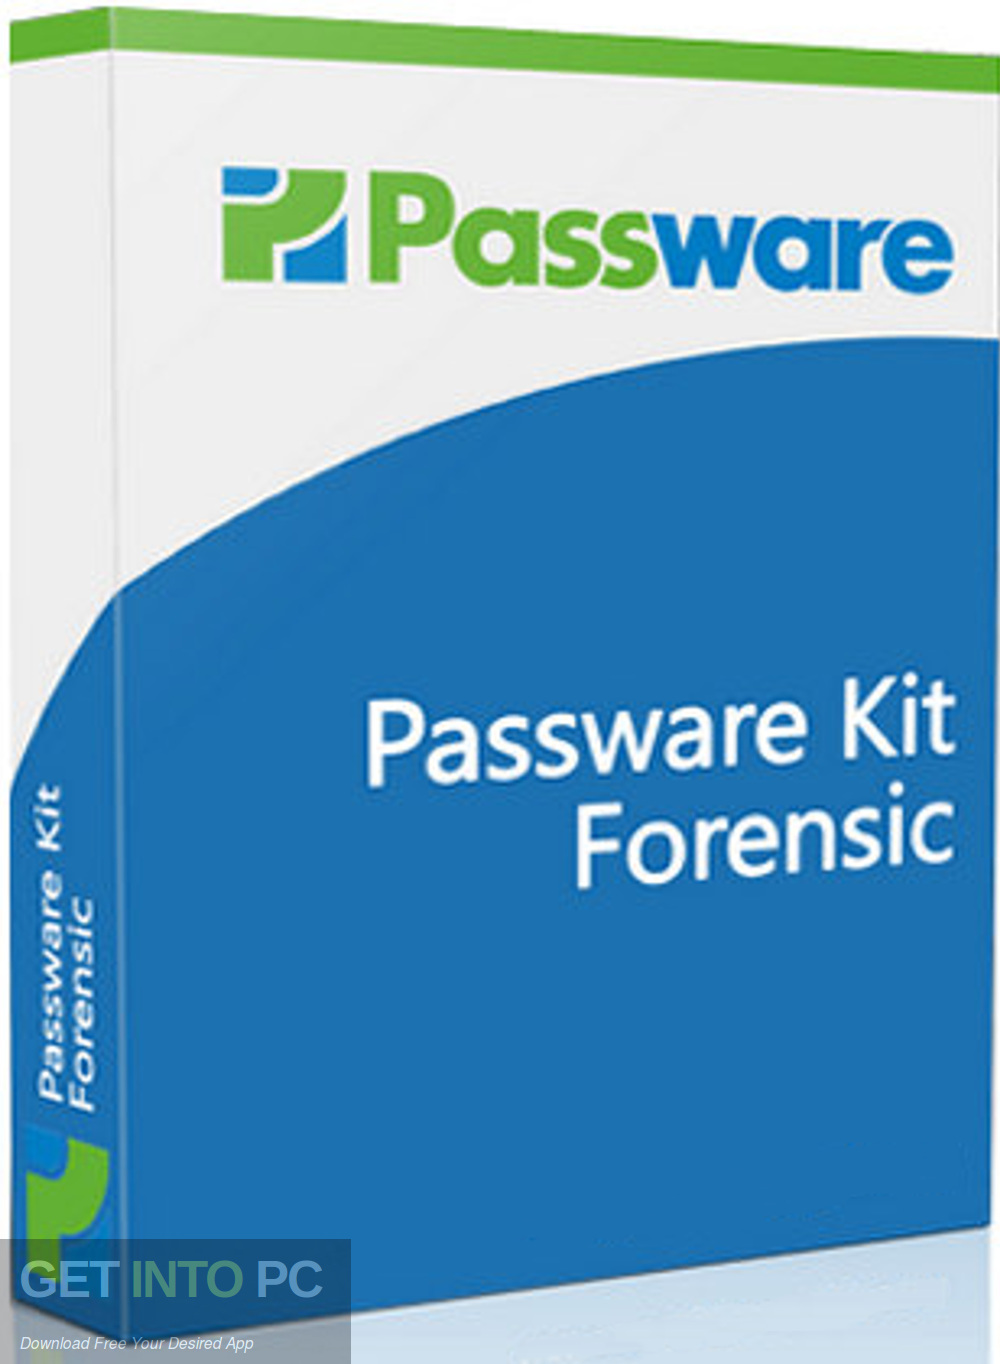 Passware kit forensic free download